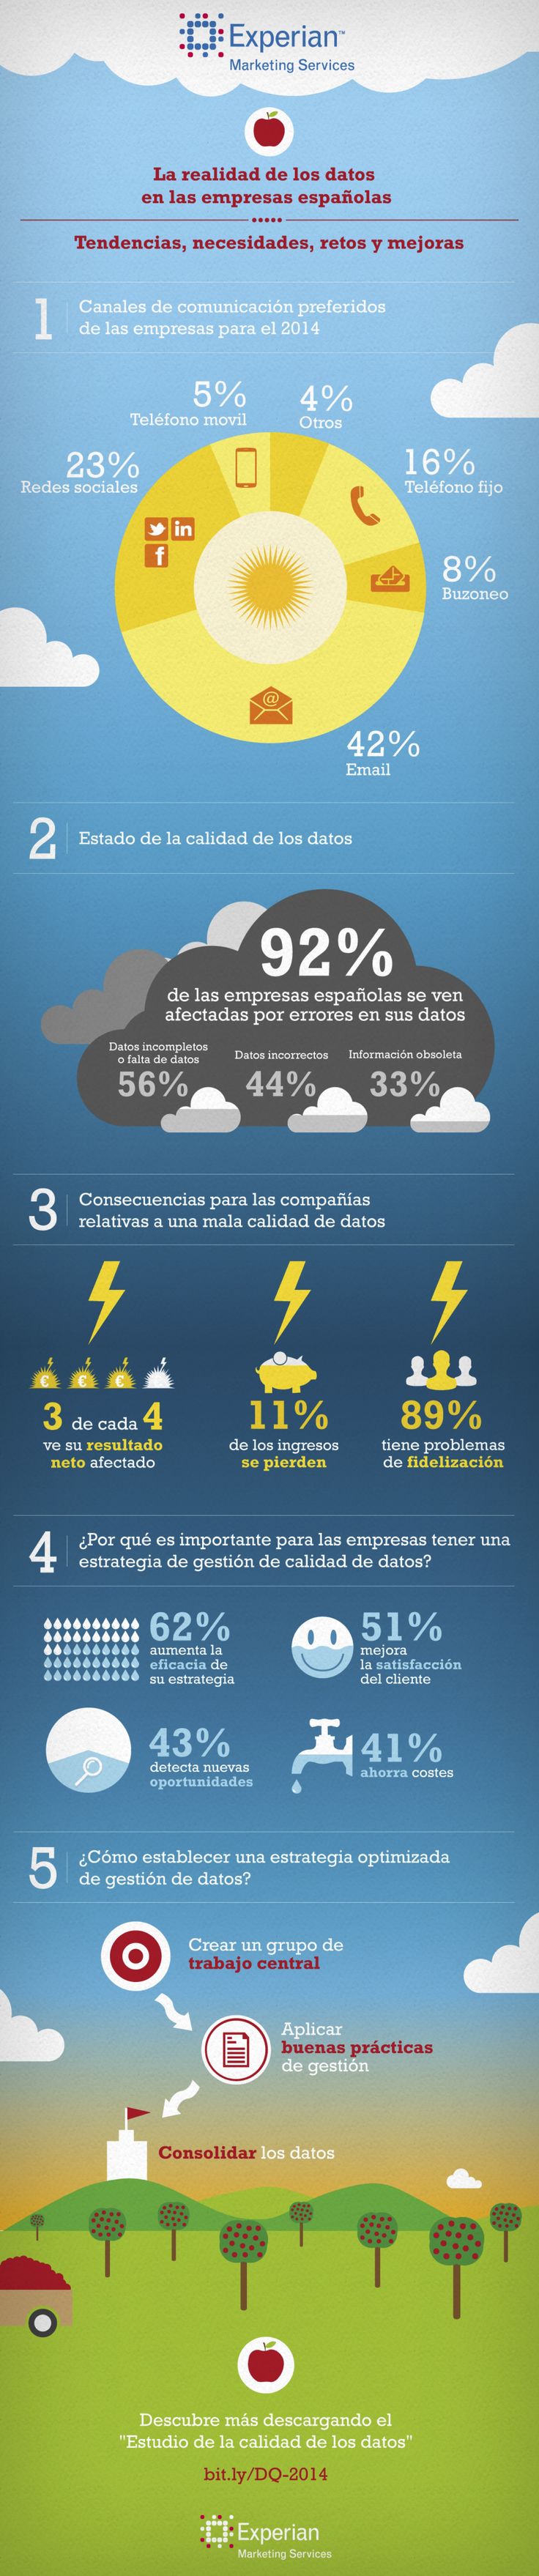 La realidad de los datos en las empresas españolas #infografia #infographic